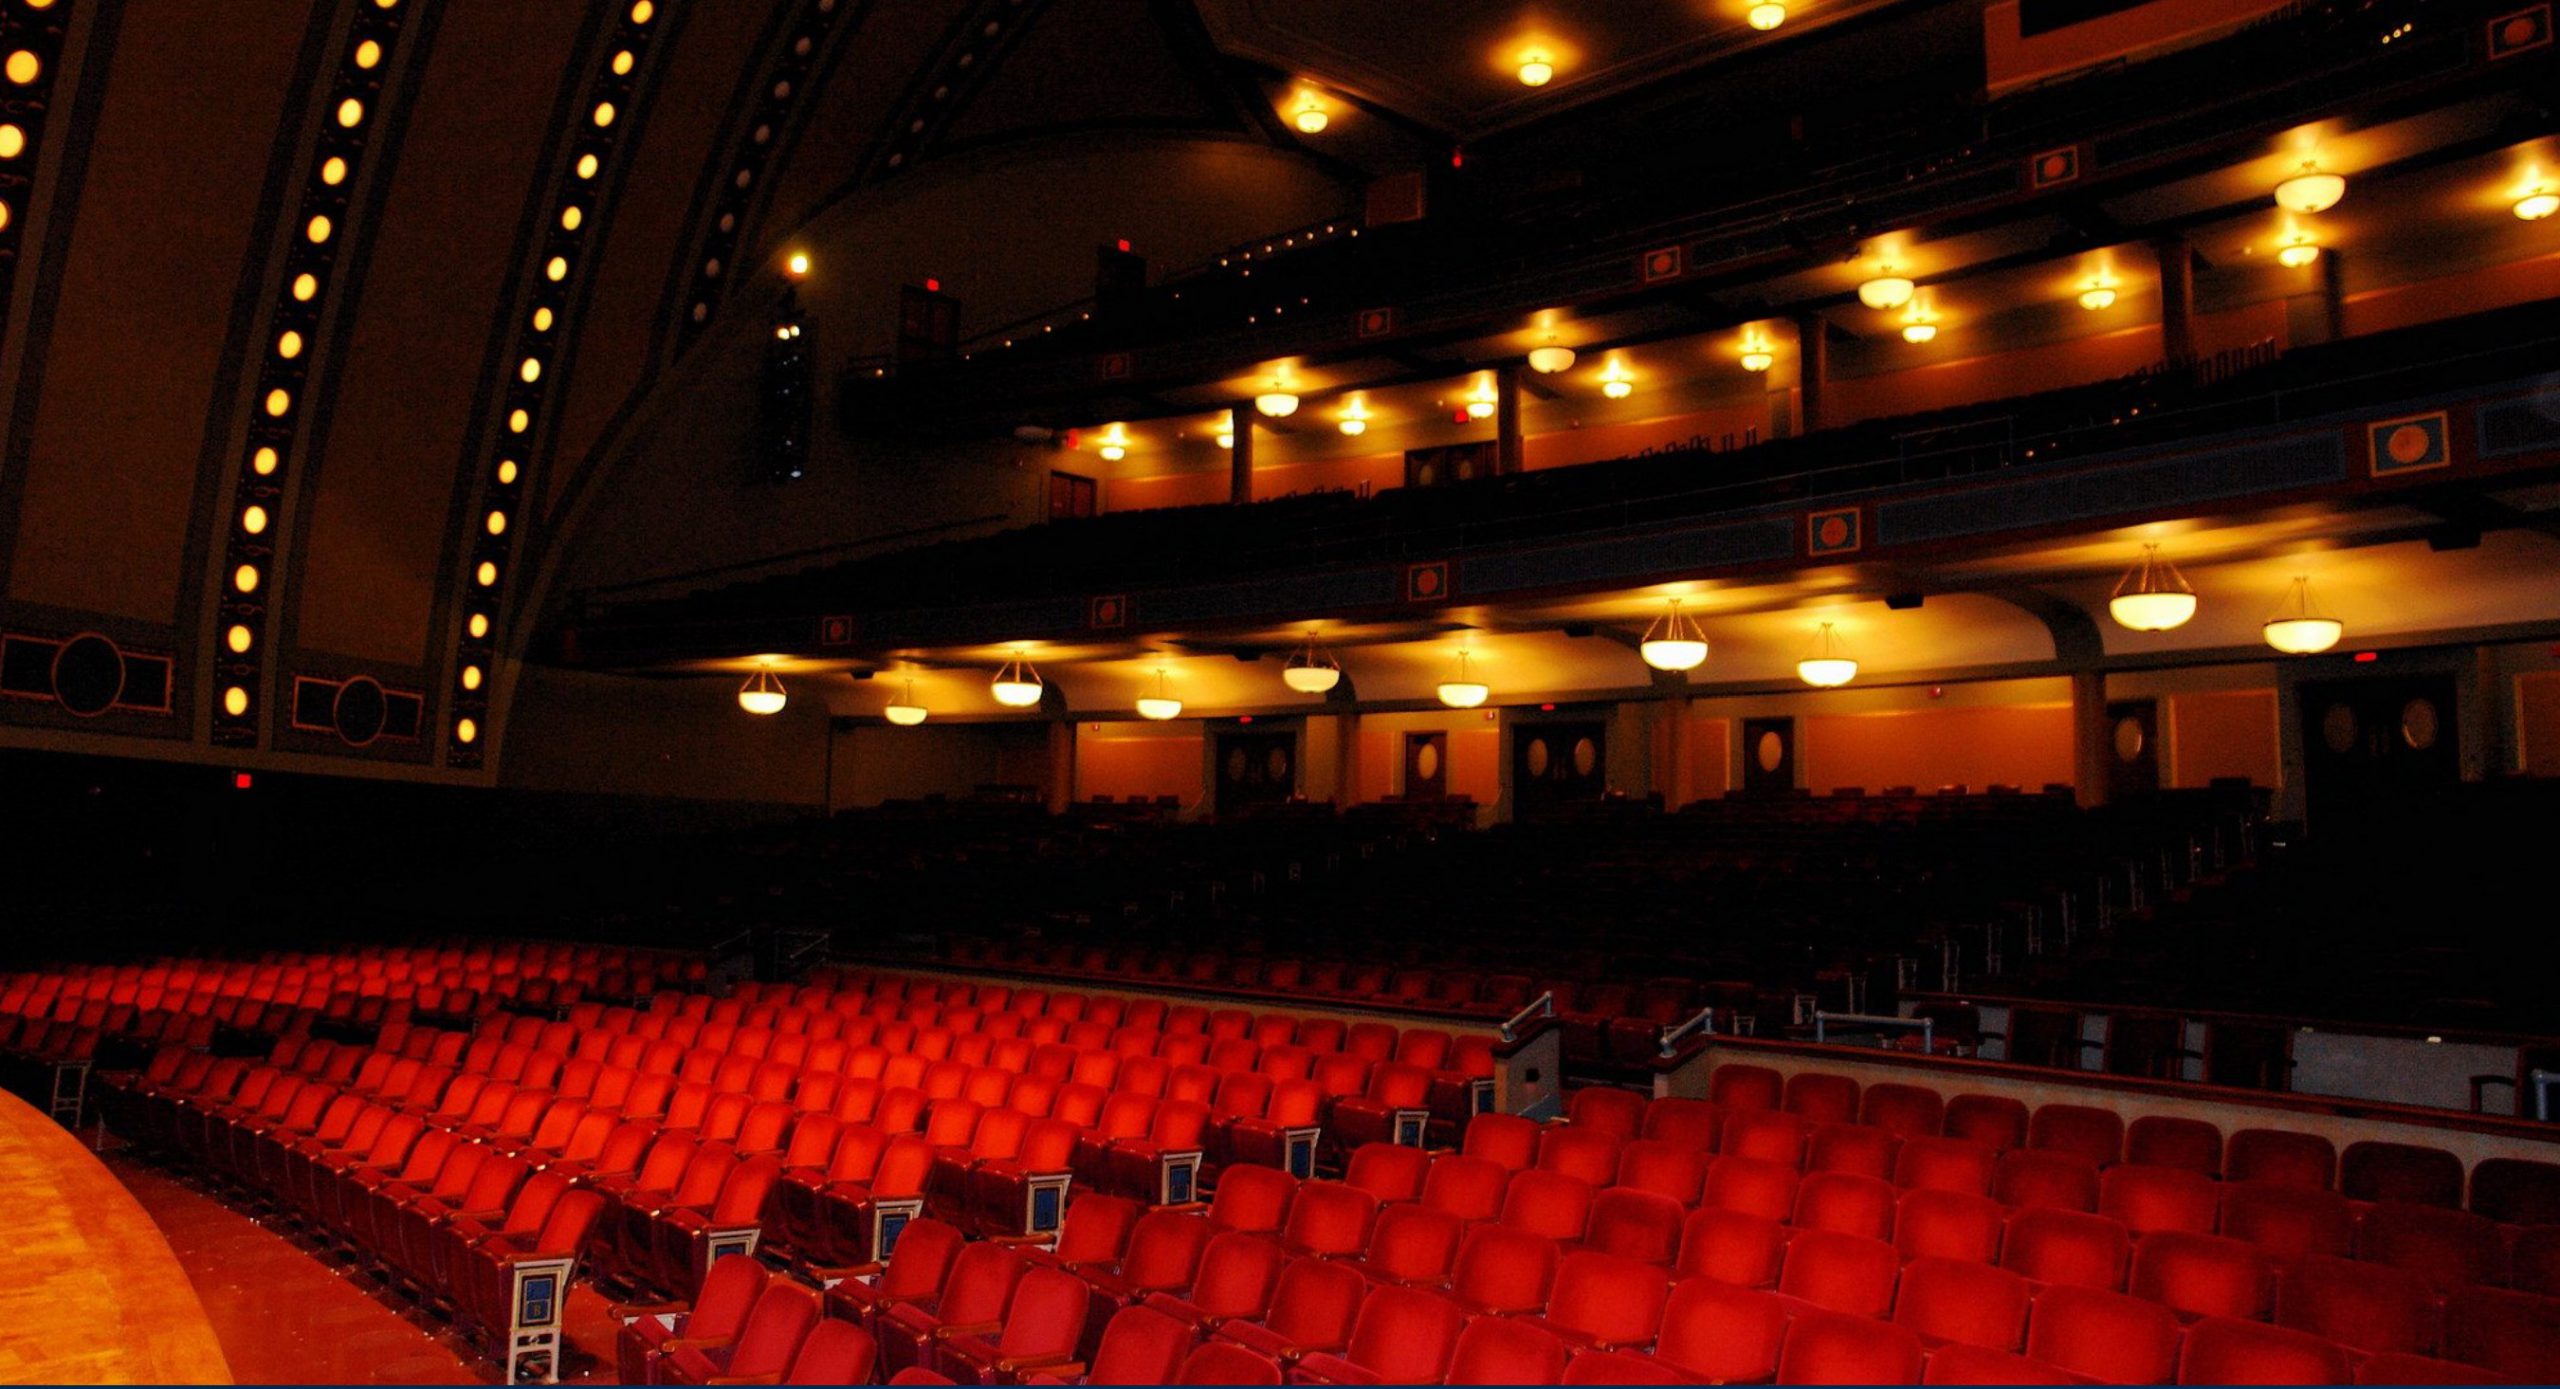 Hill Auditorium concert hall